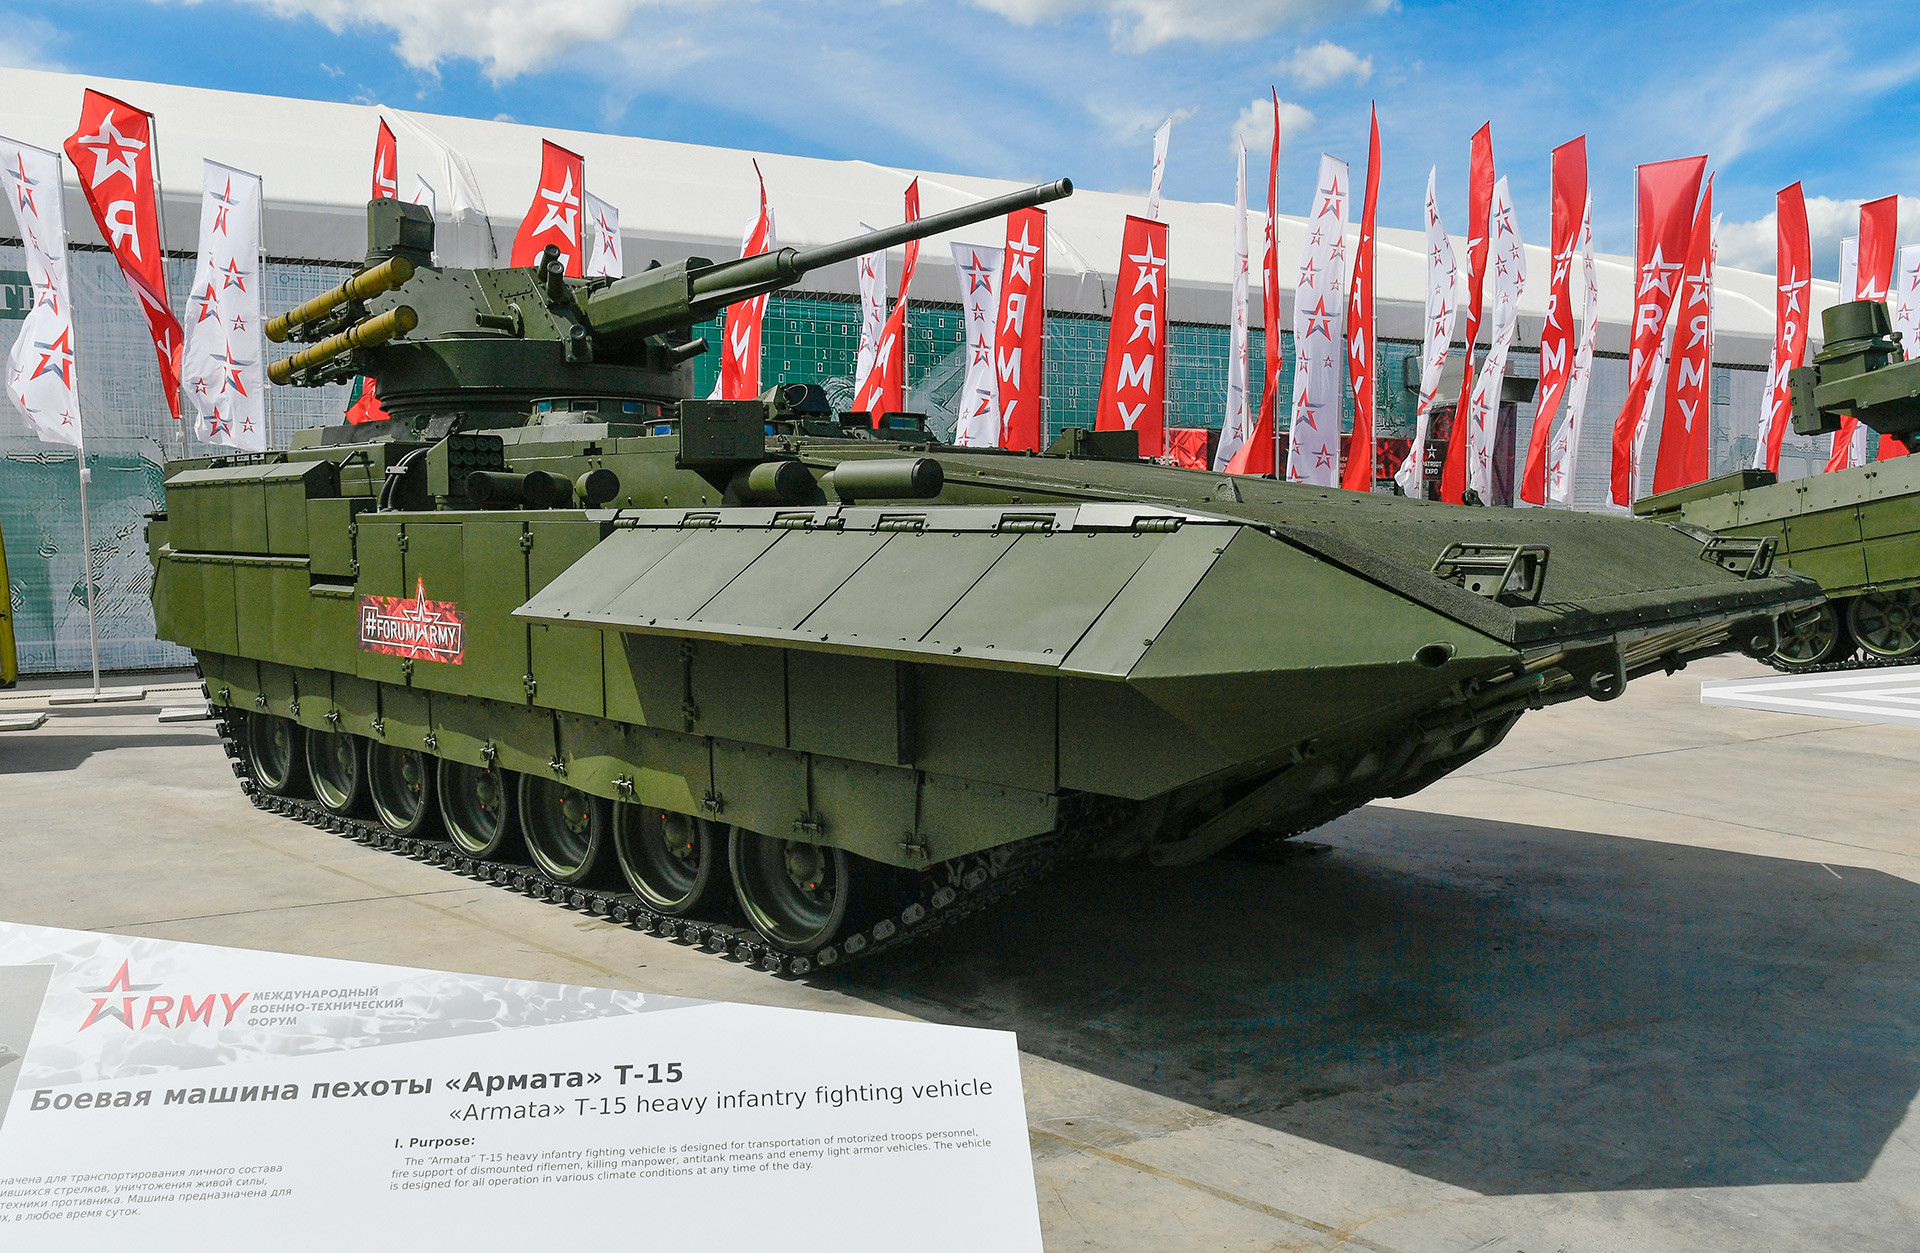 Veículo de combate blindado russo baseado na plataforma universal Armata T-15 com o módulo de combate AU-220M